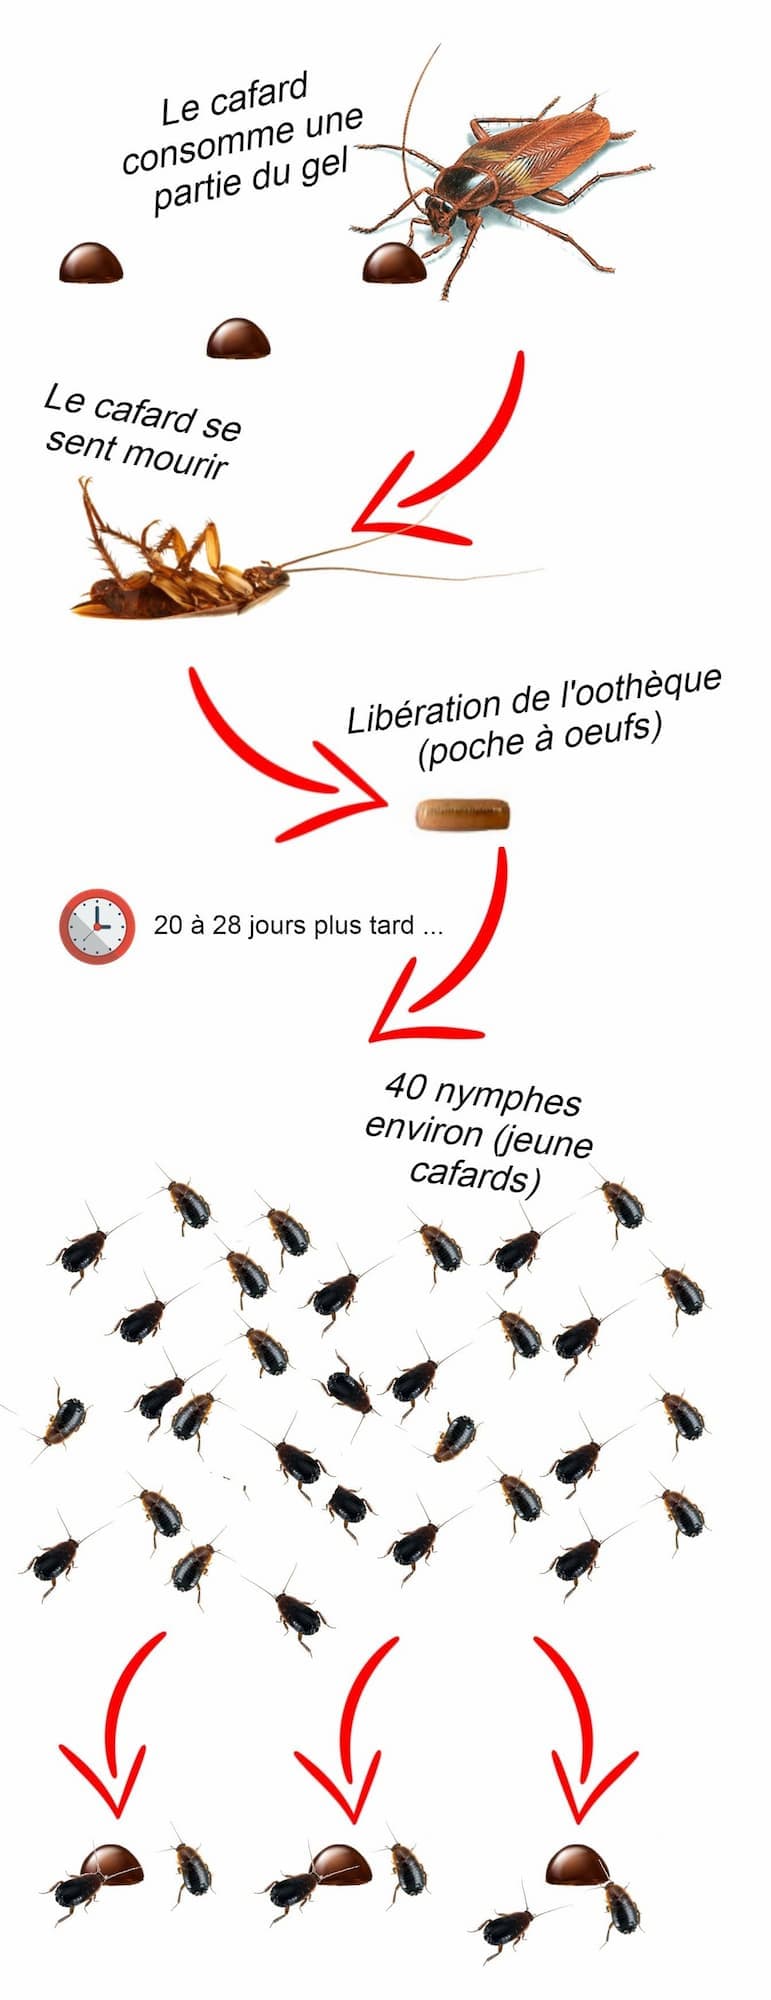 Nouveau produit anti-cafards anti-blattes: La Qualité et le prix!!! -  Insecticides et raticides